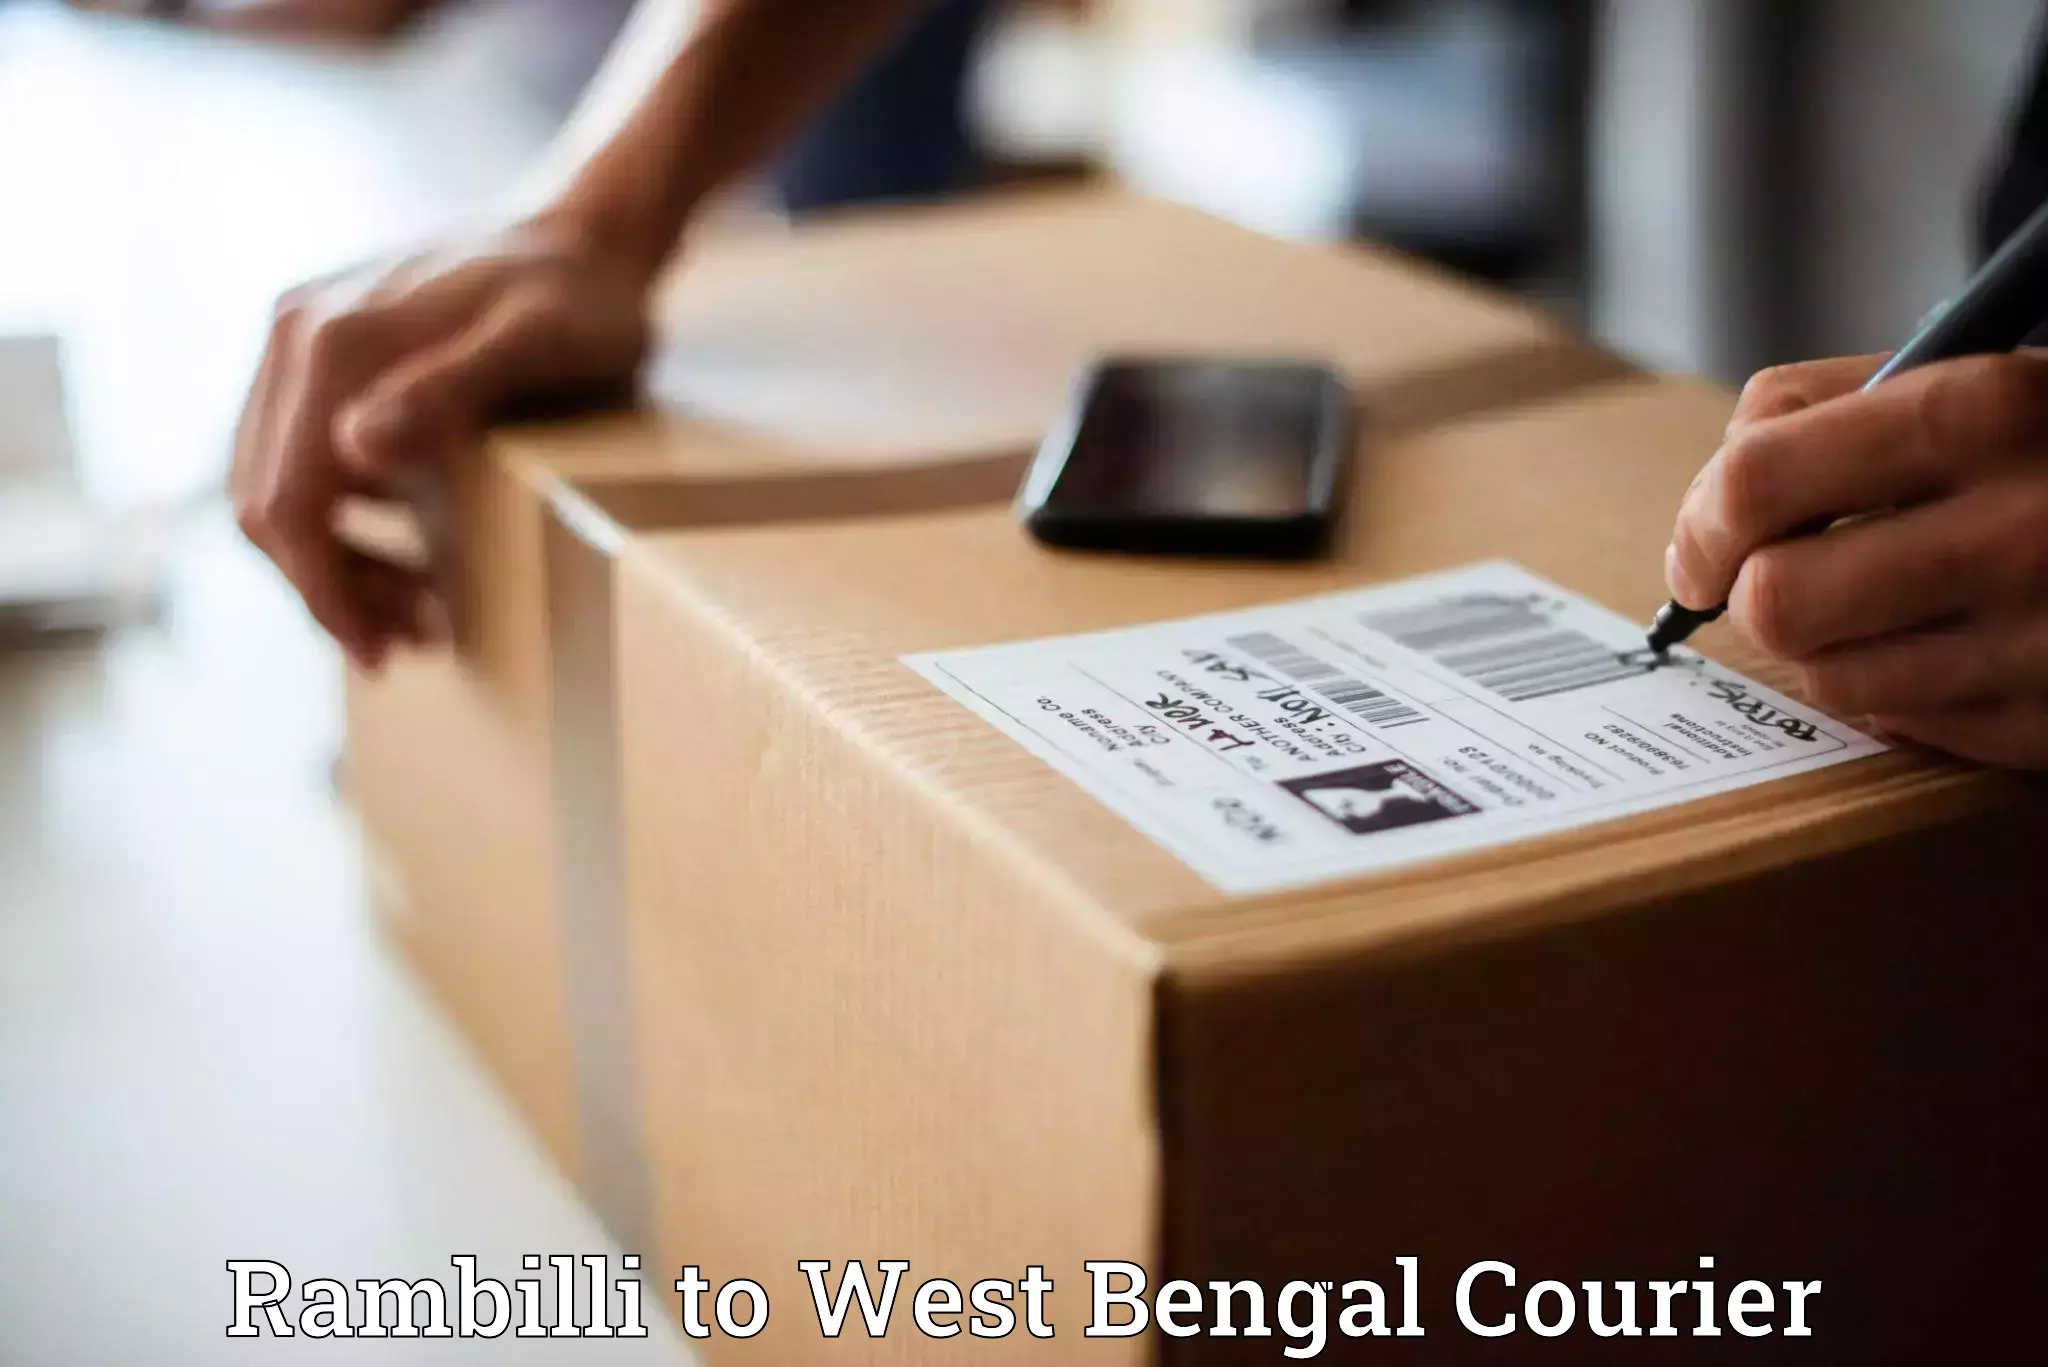 User-friendly delivery service Rambilli to Onda